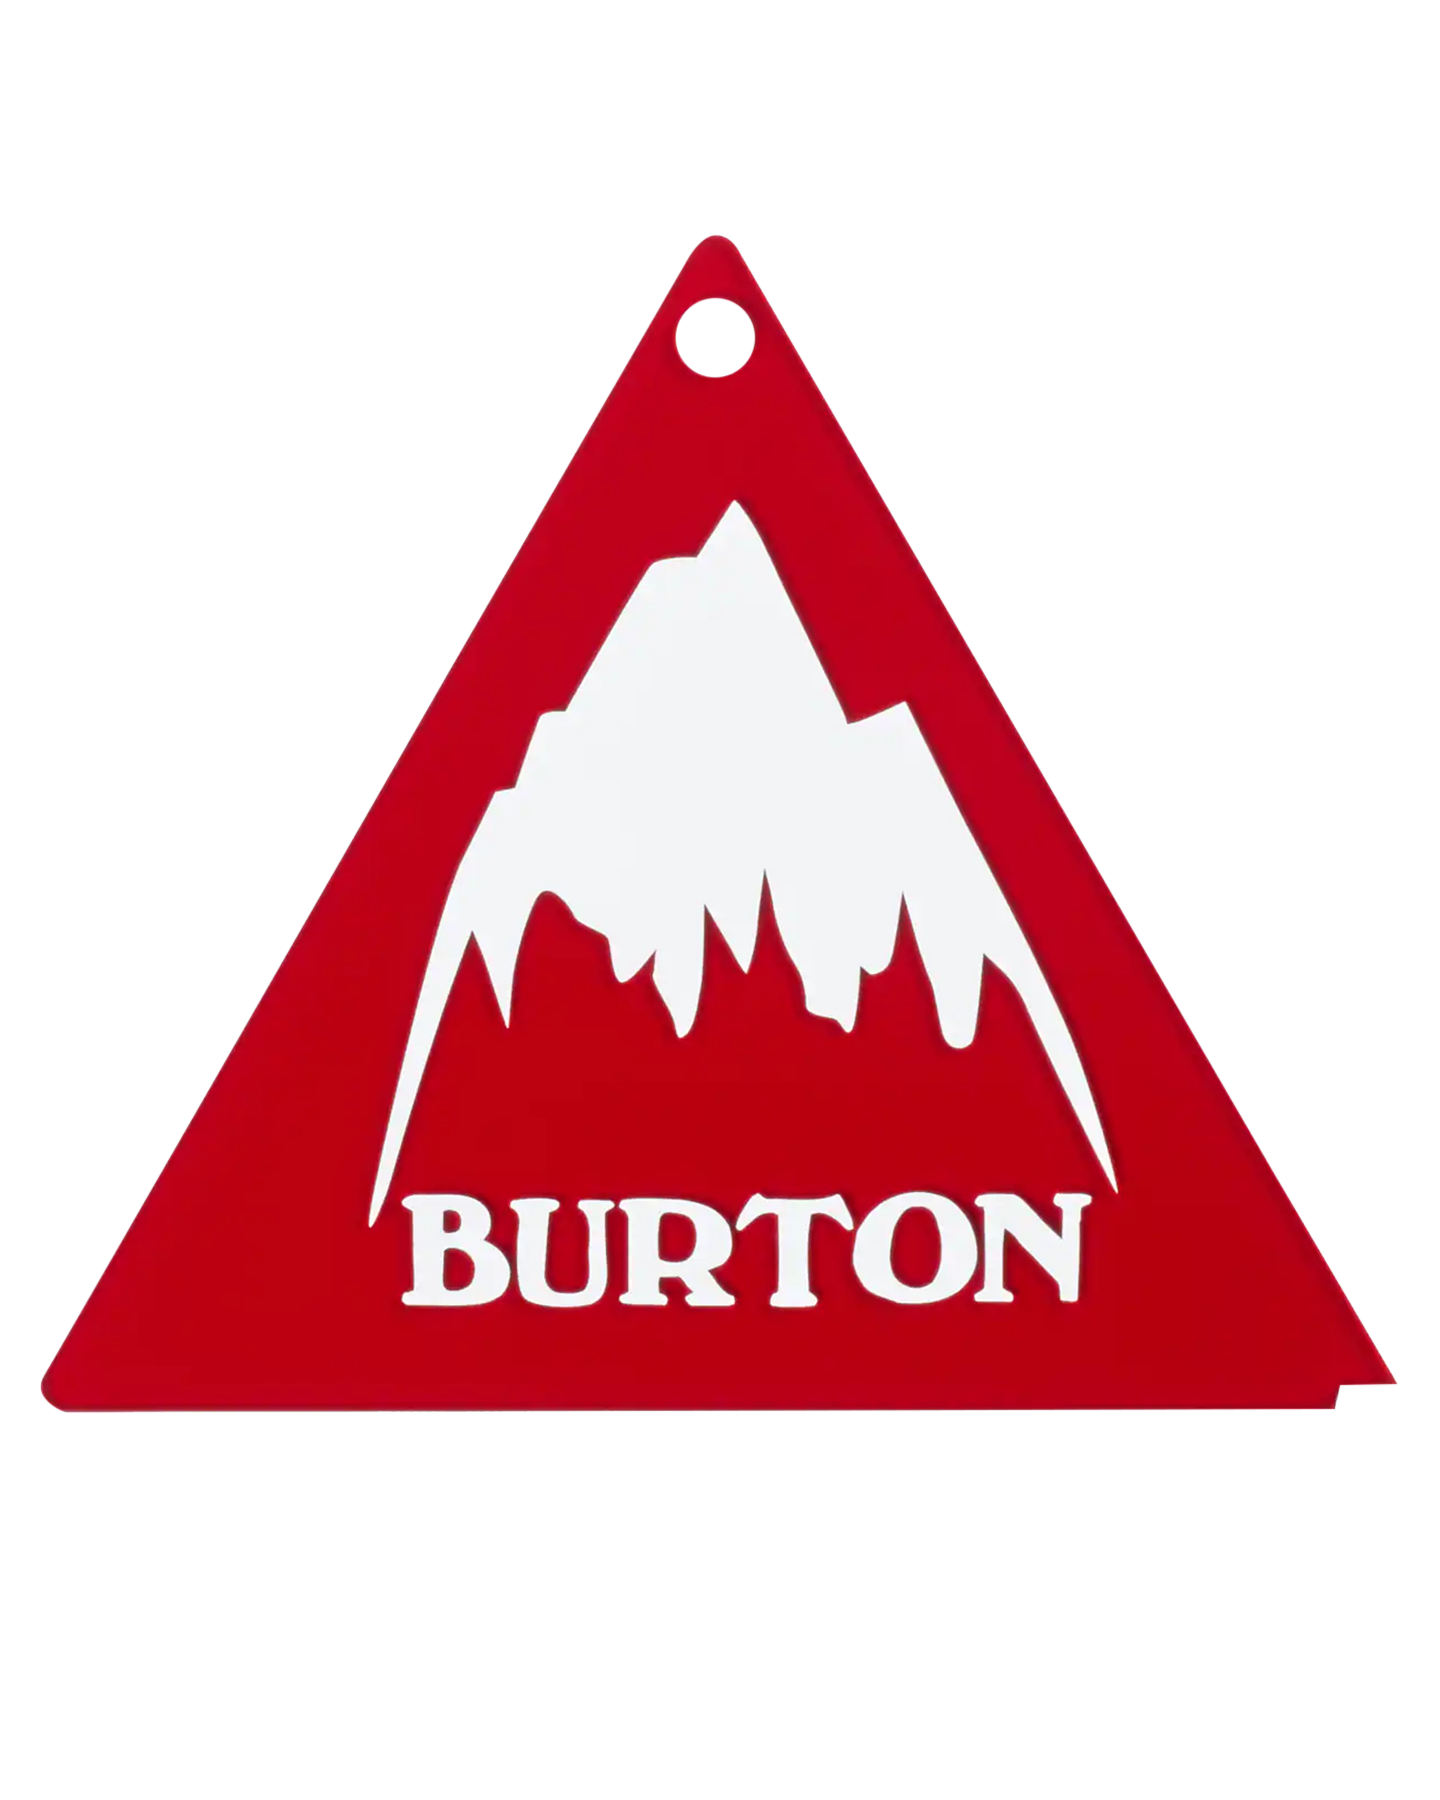 Burton Tri-Scraper Snowboard Tools - Trojan Wake Ski Snow